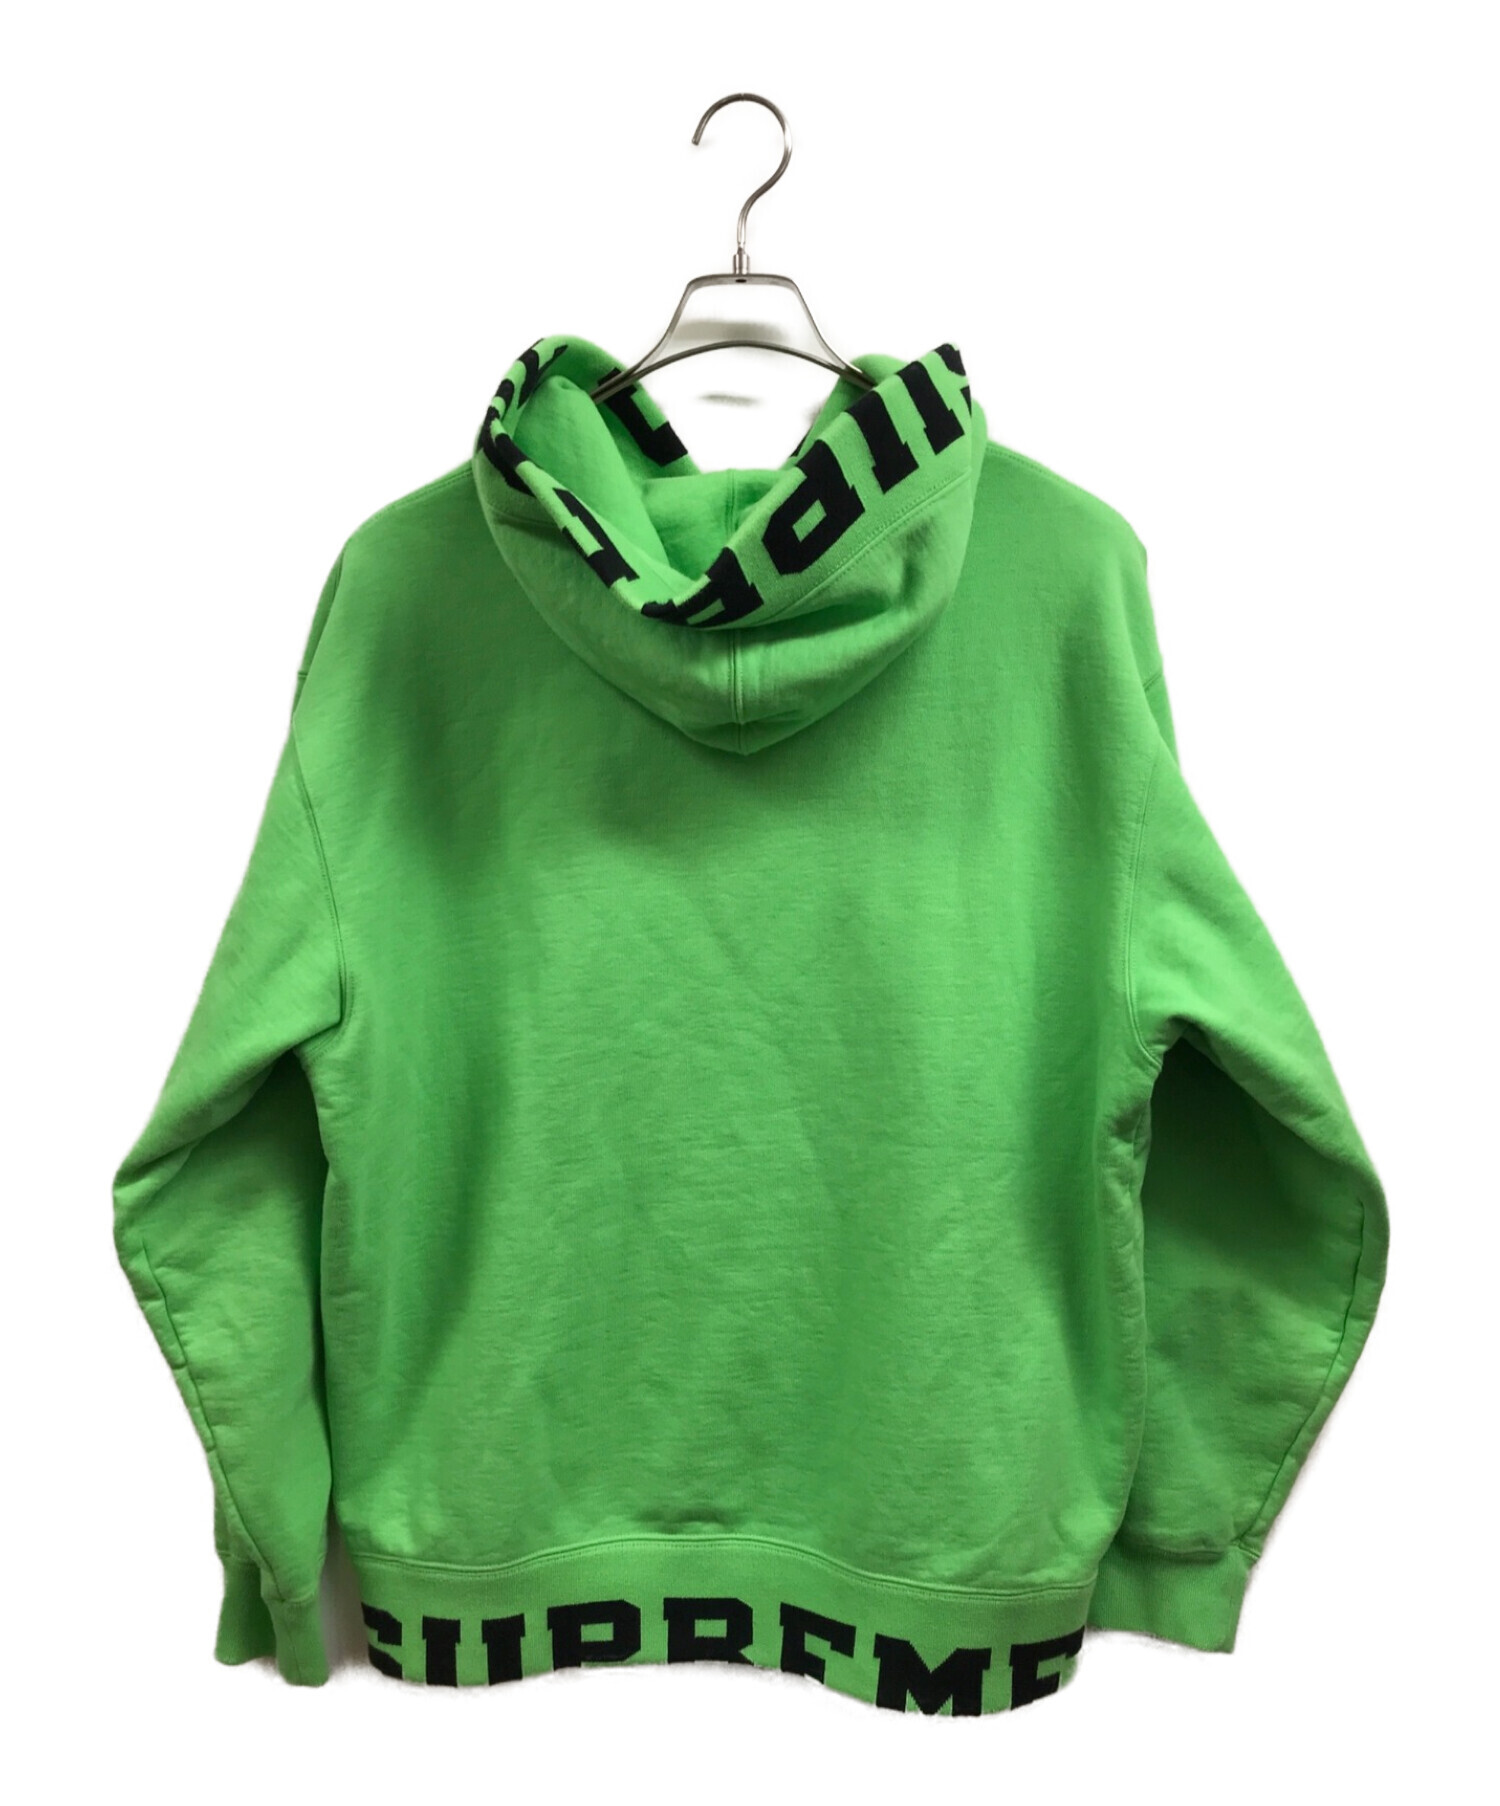 SUPREME (シュプリーム) Cropped Logos Hooded Sweatshirt グリーン サイズ:M